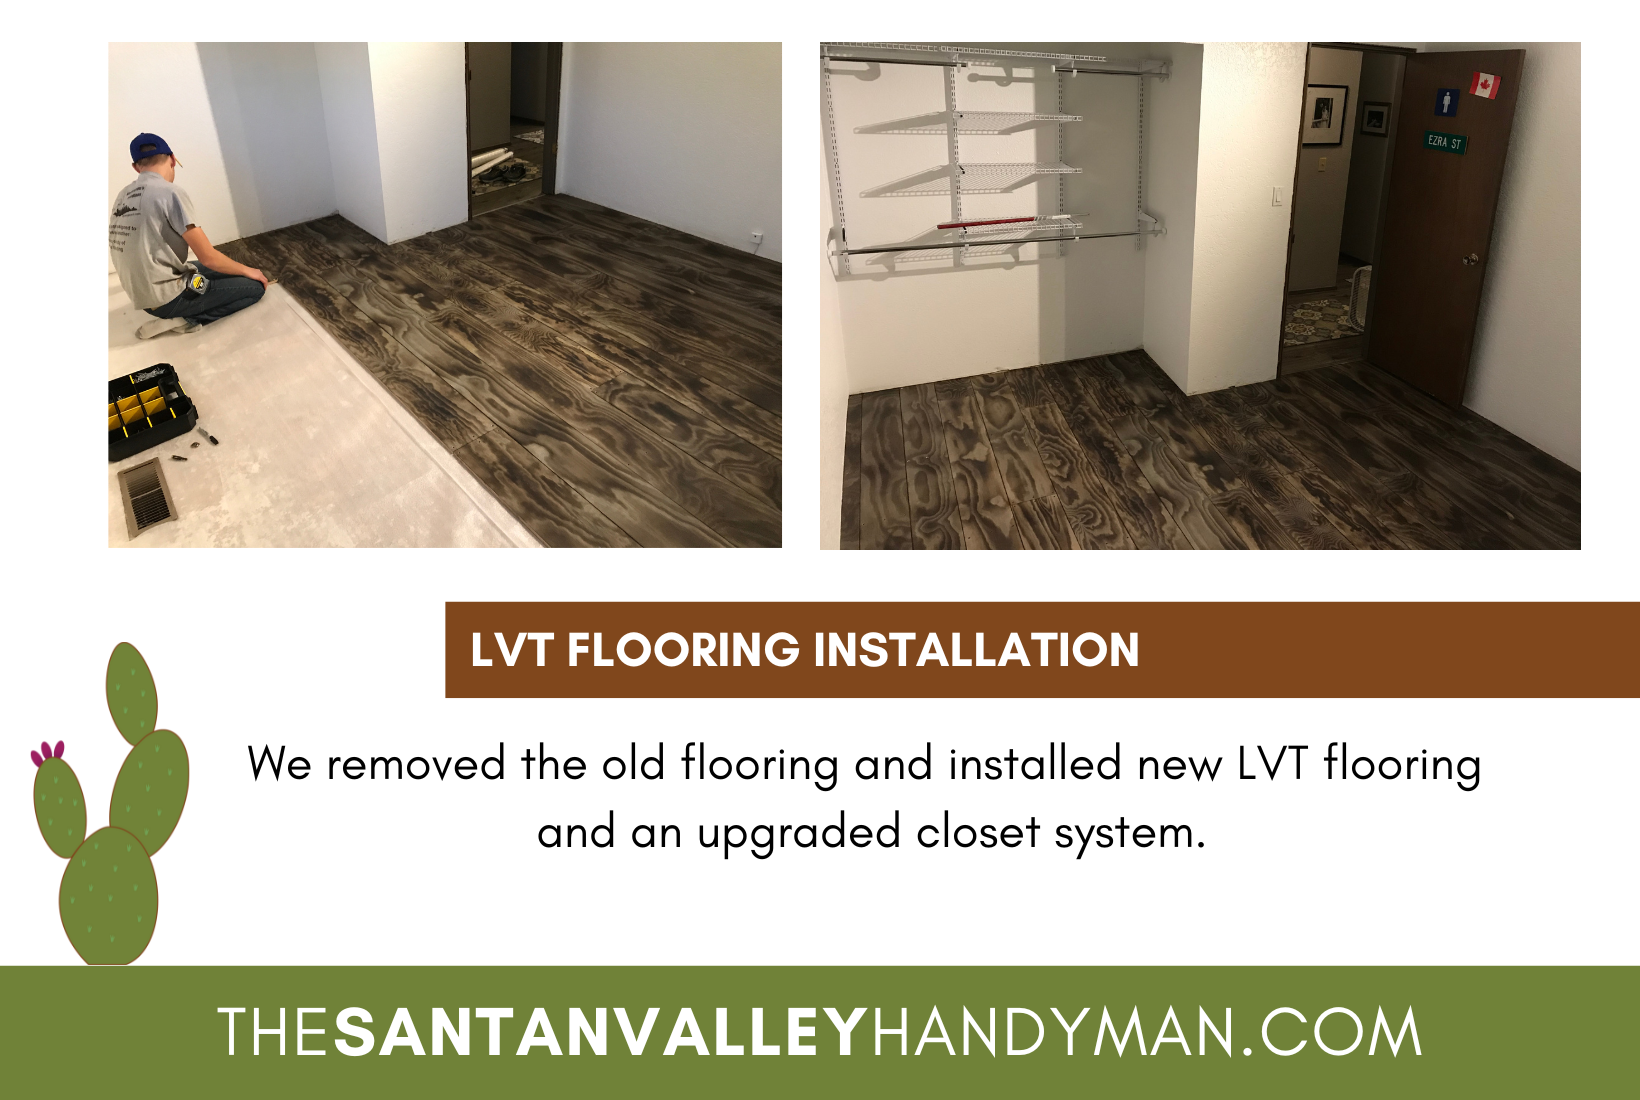 LVT Flooring installation